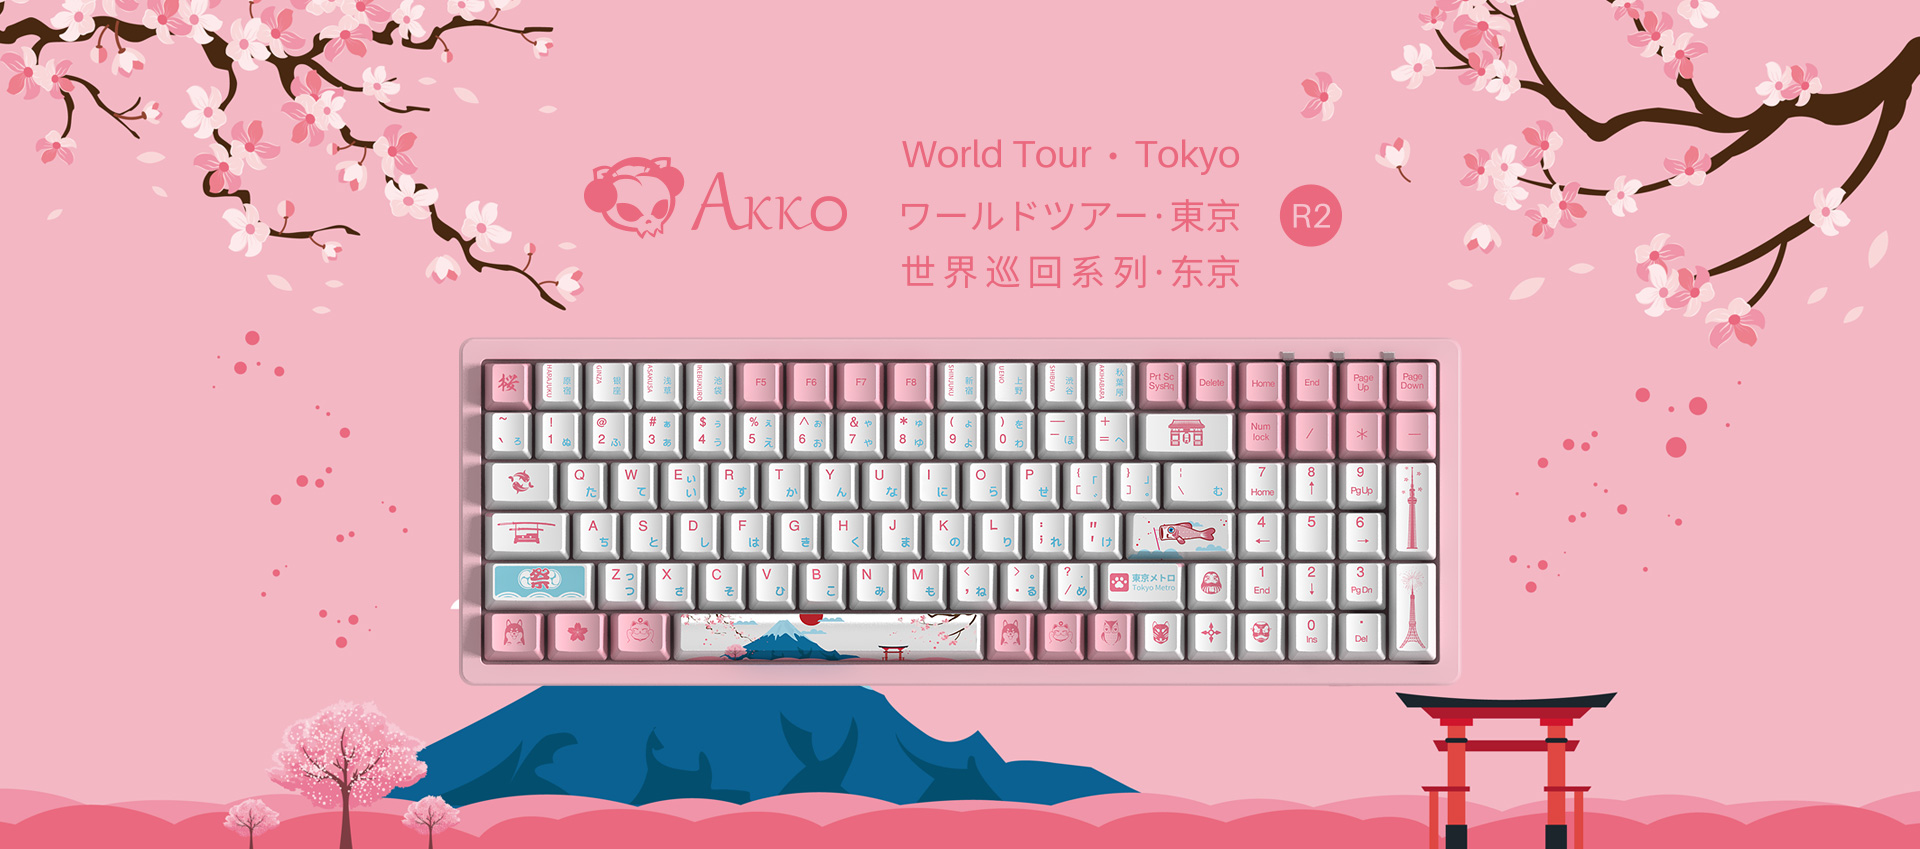 Akko tokyo tour